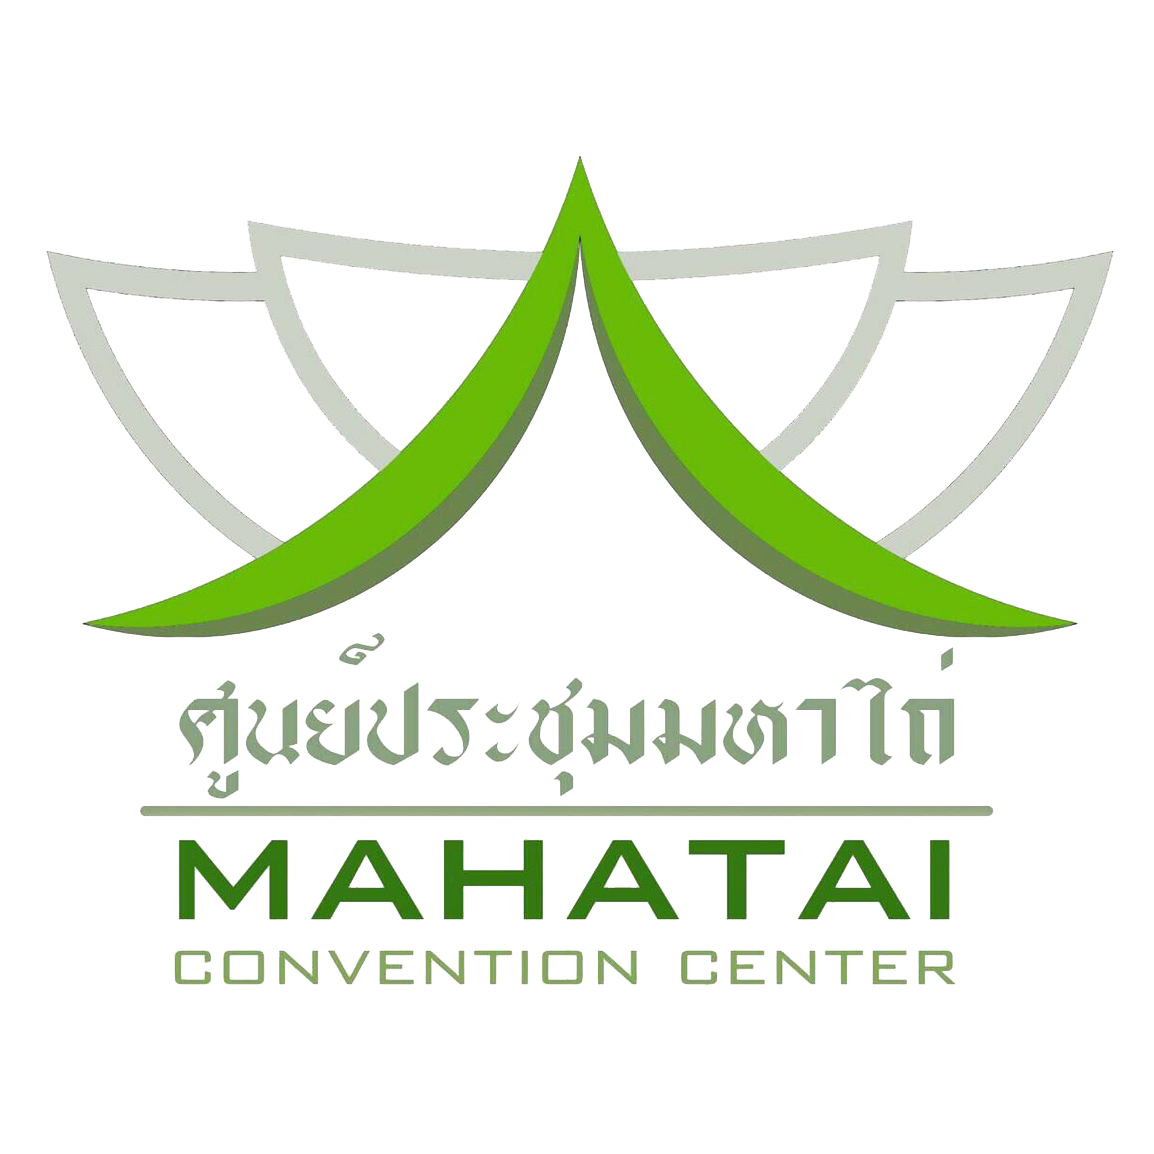 ศูนย์ประชุมมหาไถ่ พัทยา (Mahatai Convention Center) เปิดให้บริการแล้ววันนี้